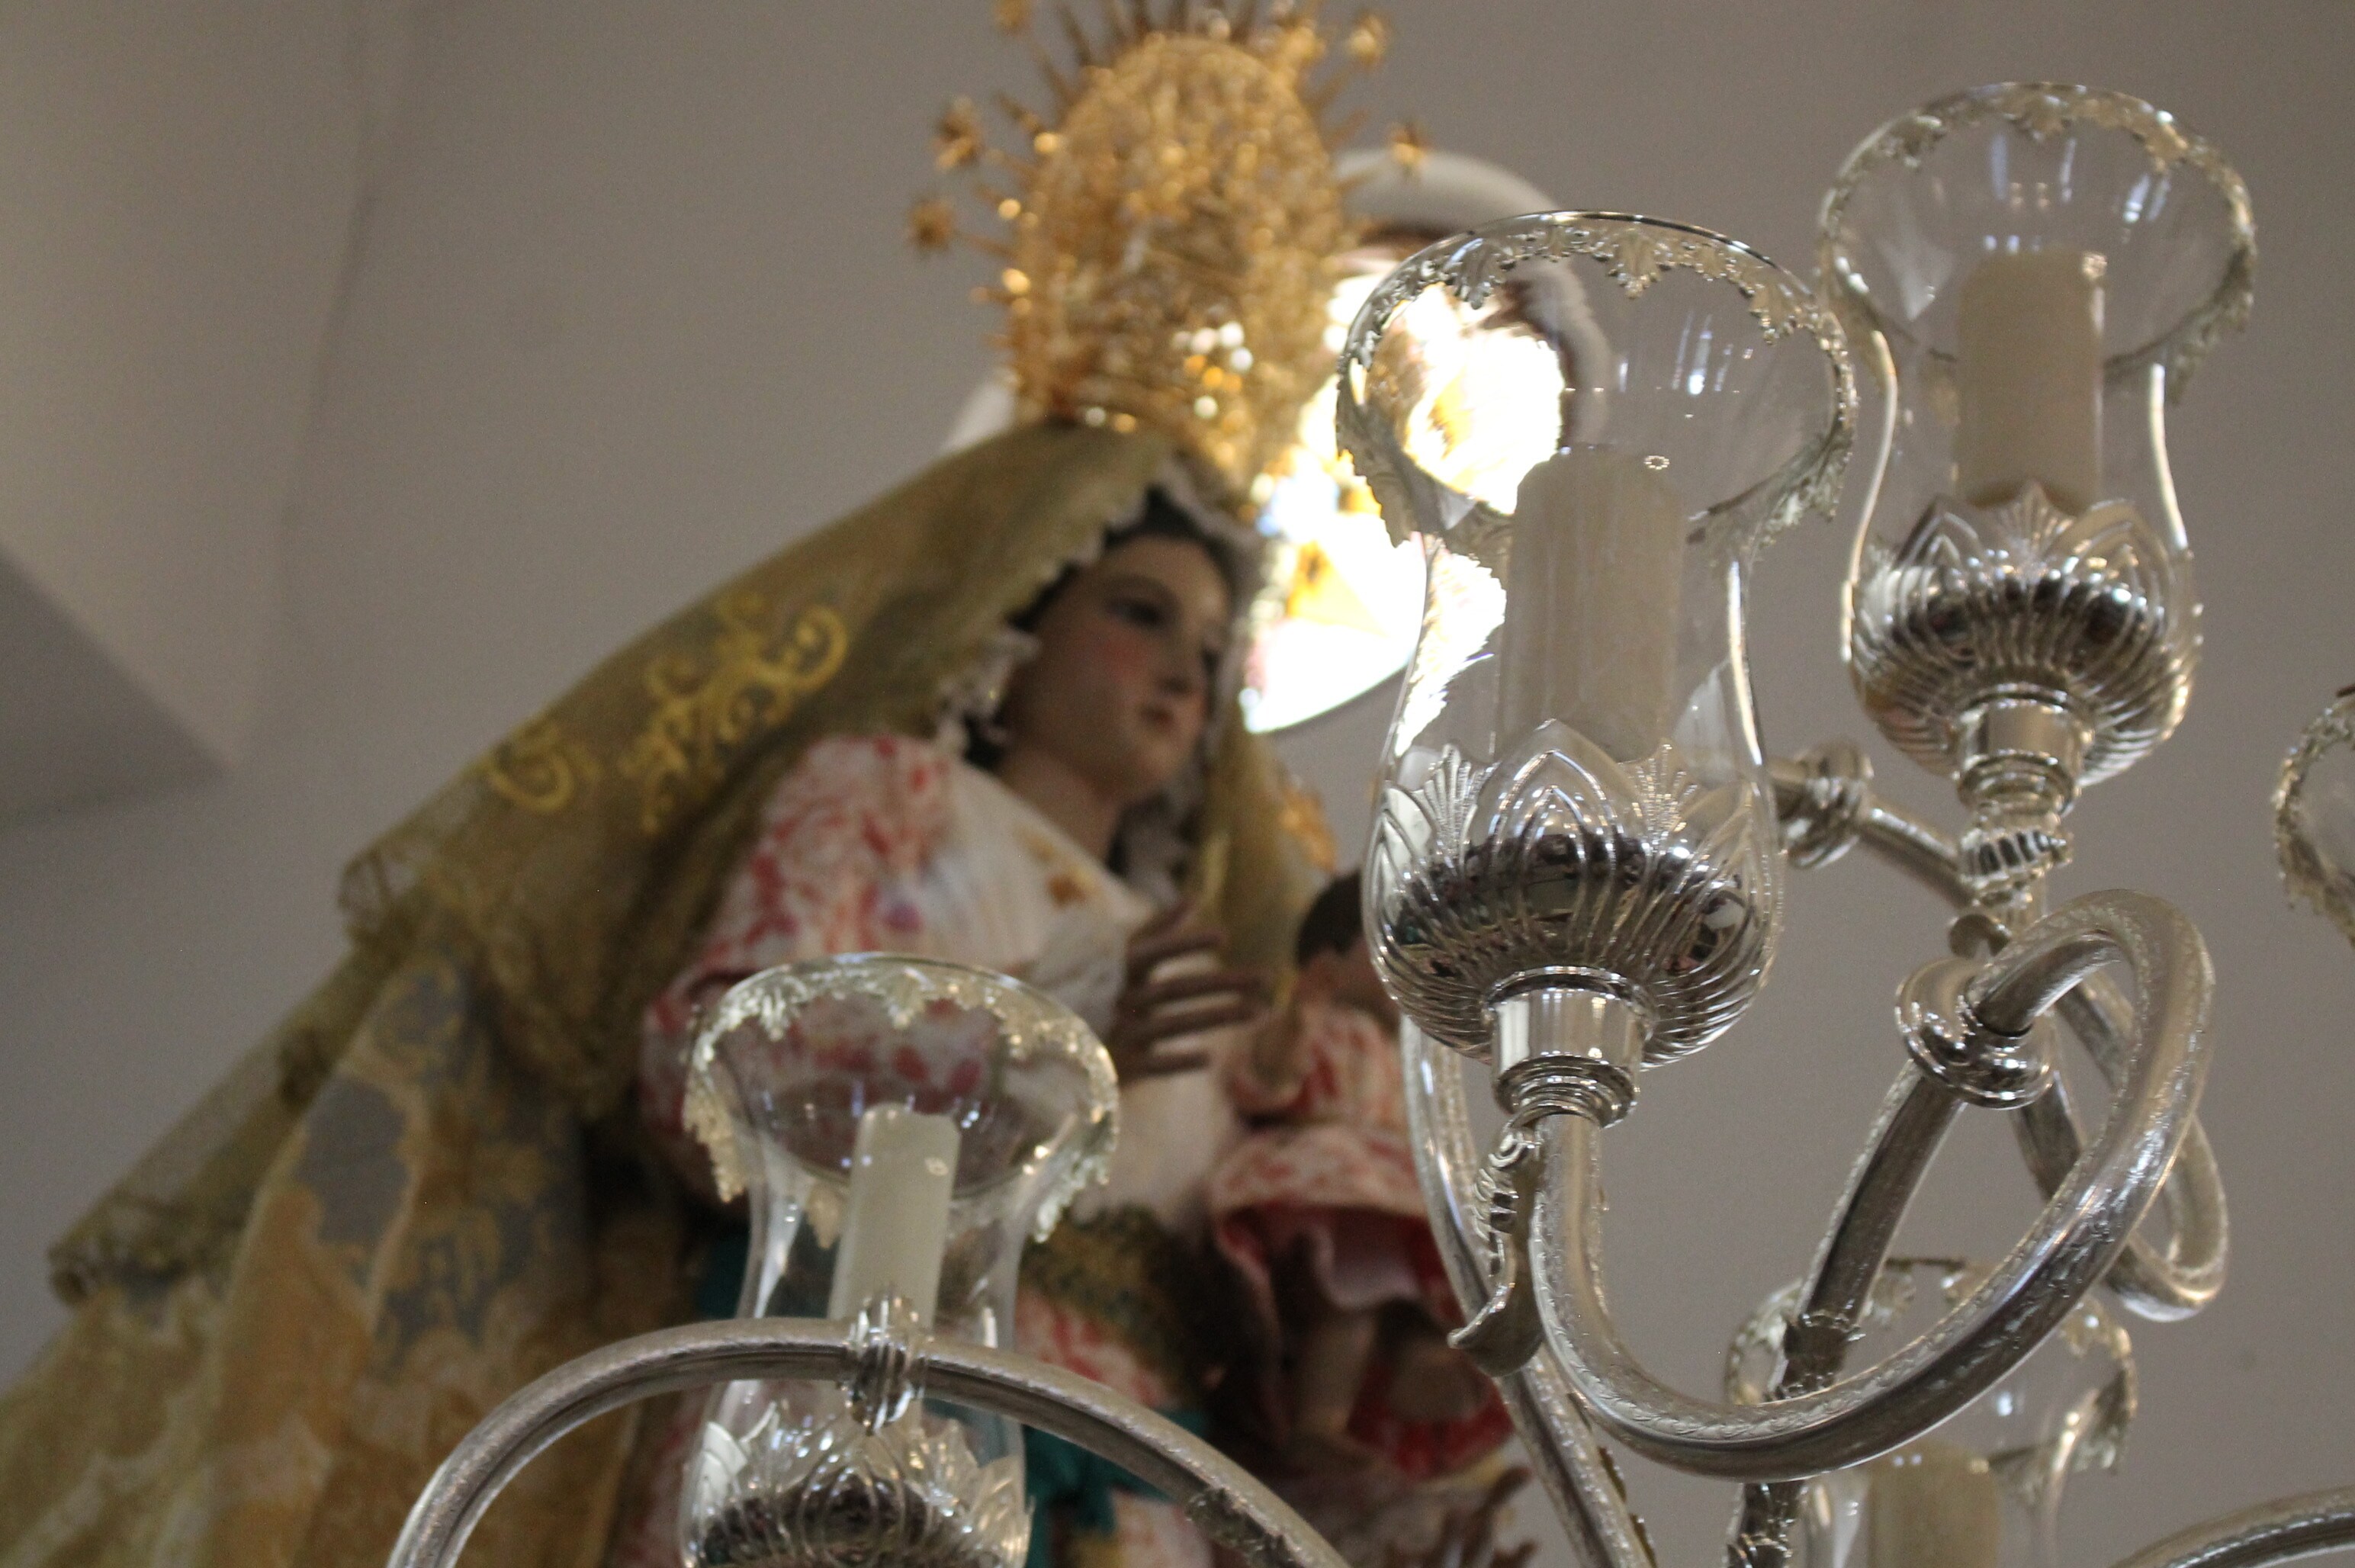 Solemnes cultos a la Virgen de Tentudía, patrona de Monesterio